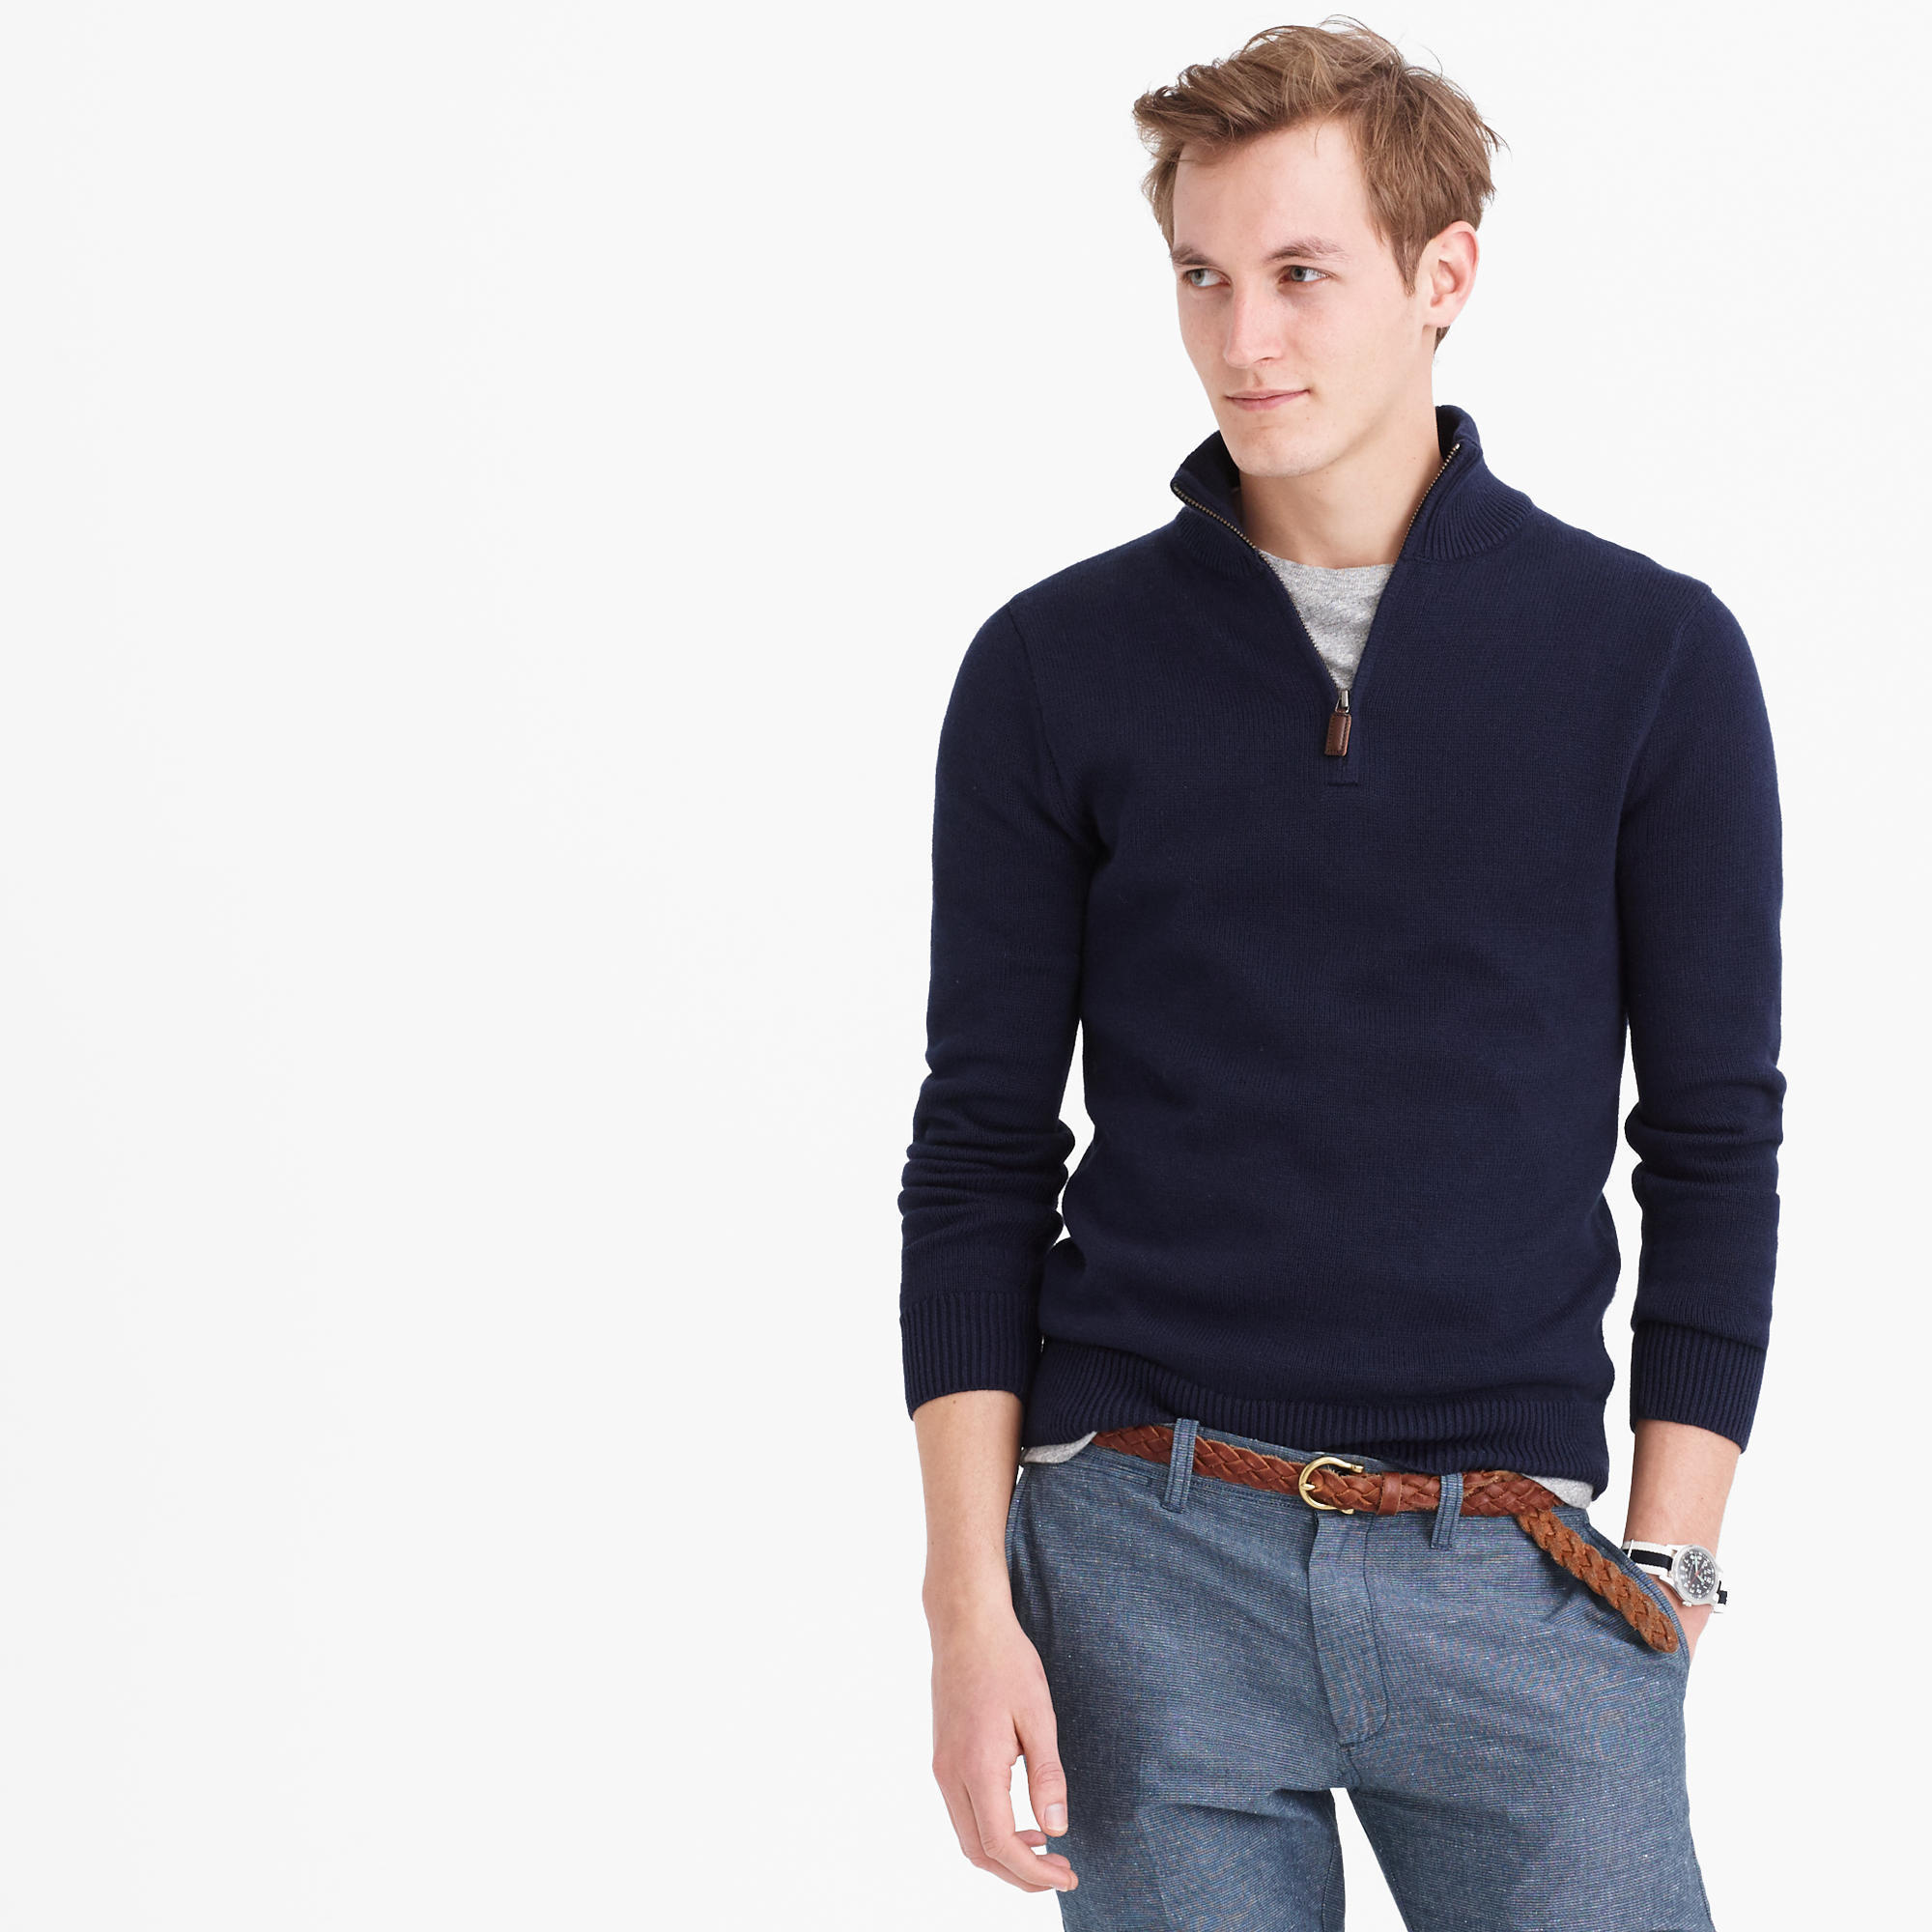 Men's Navy Zip Neck Sweater, Grey Crew-neck T-shirt, Blue Dress Pants,  Brown Woven Leather Belt | Lookastic